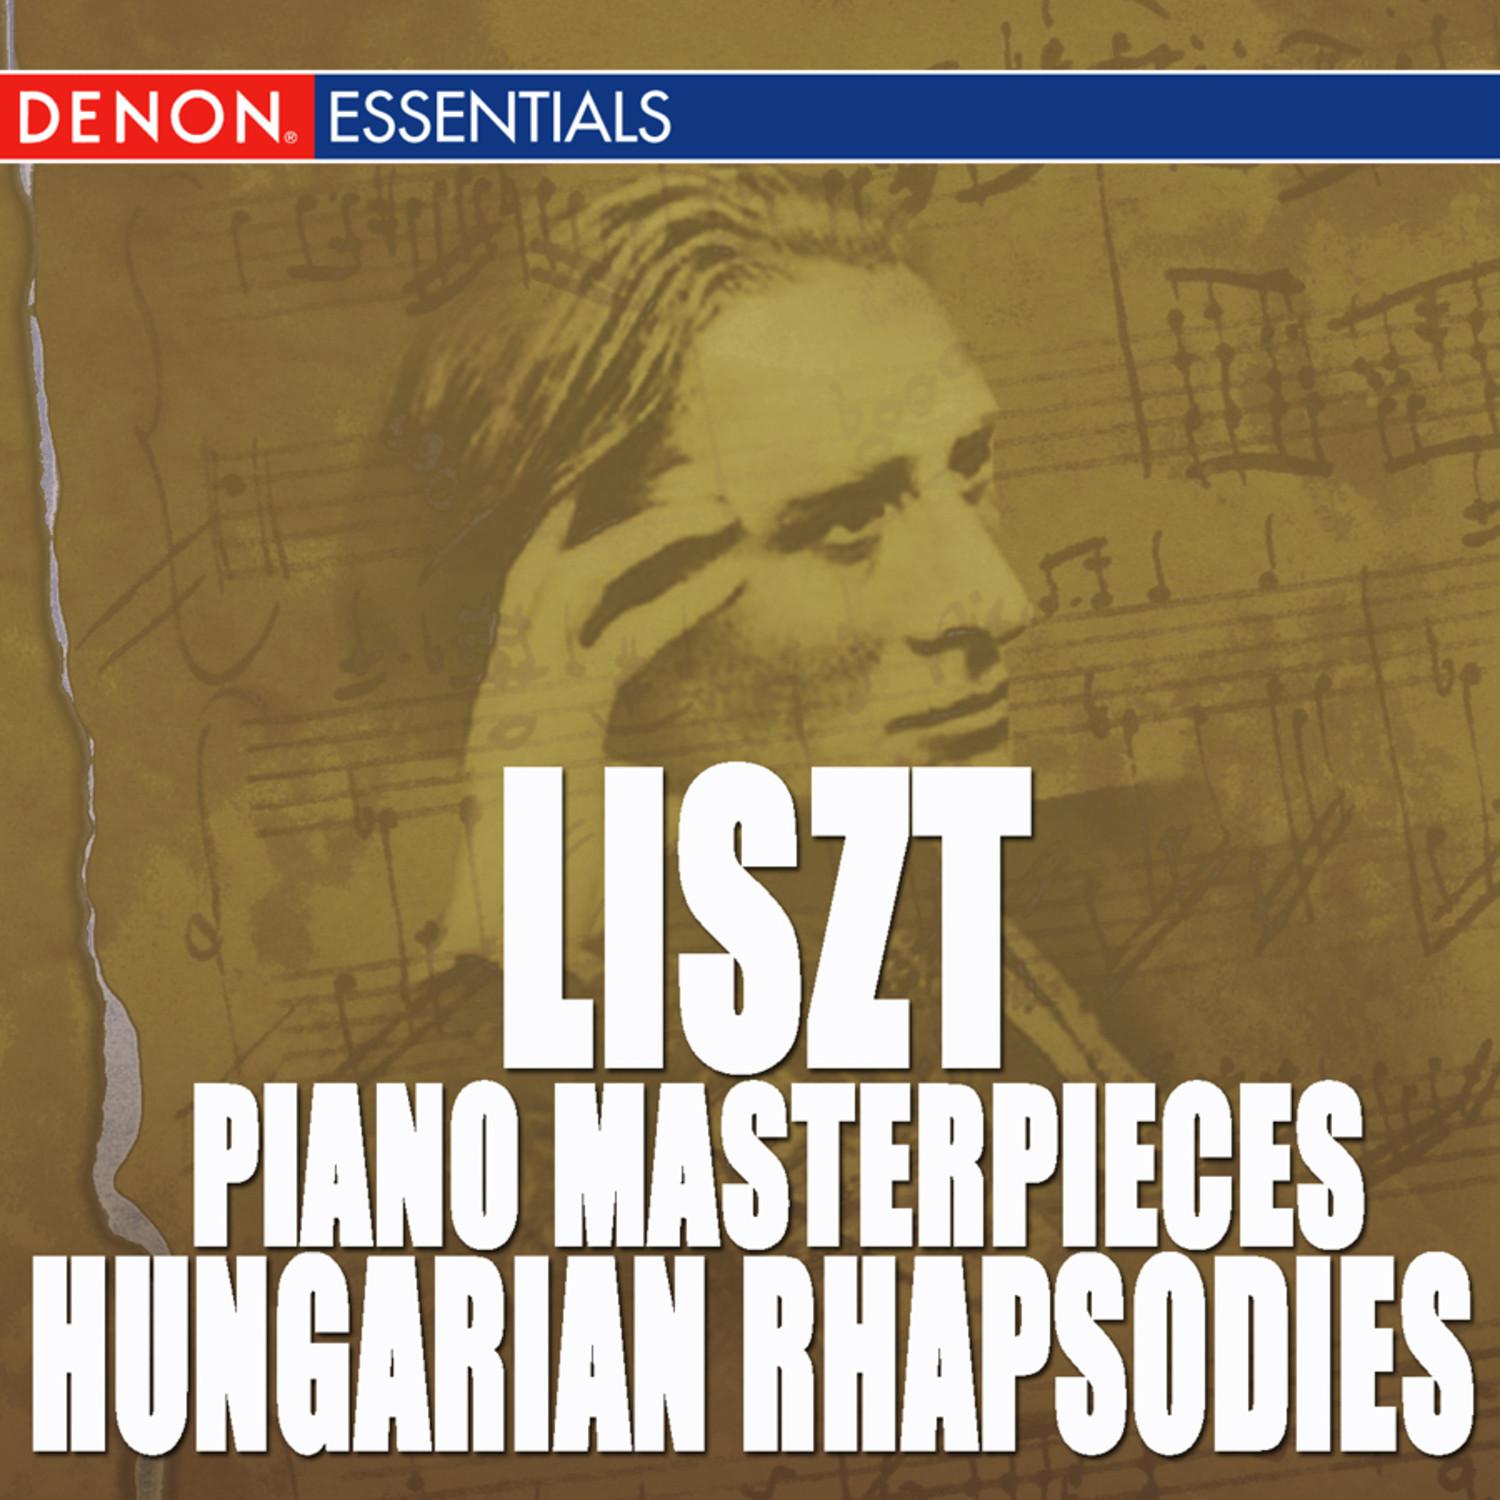 Hungarian Rhapsody No. 1 in E Major